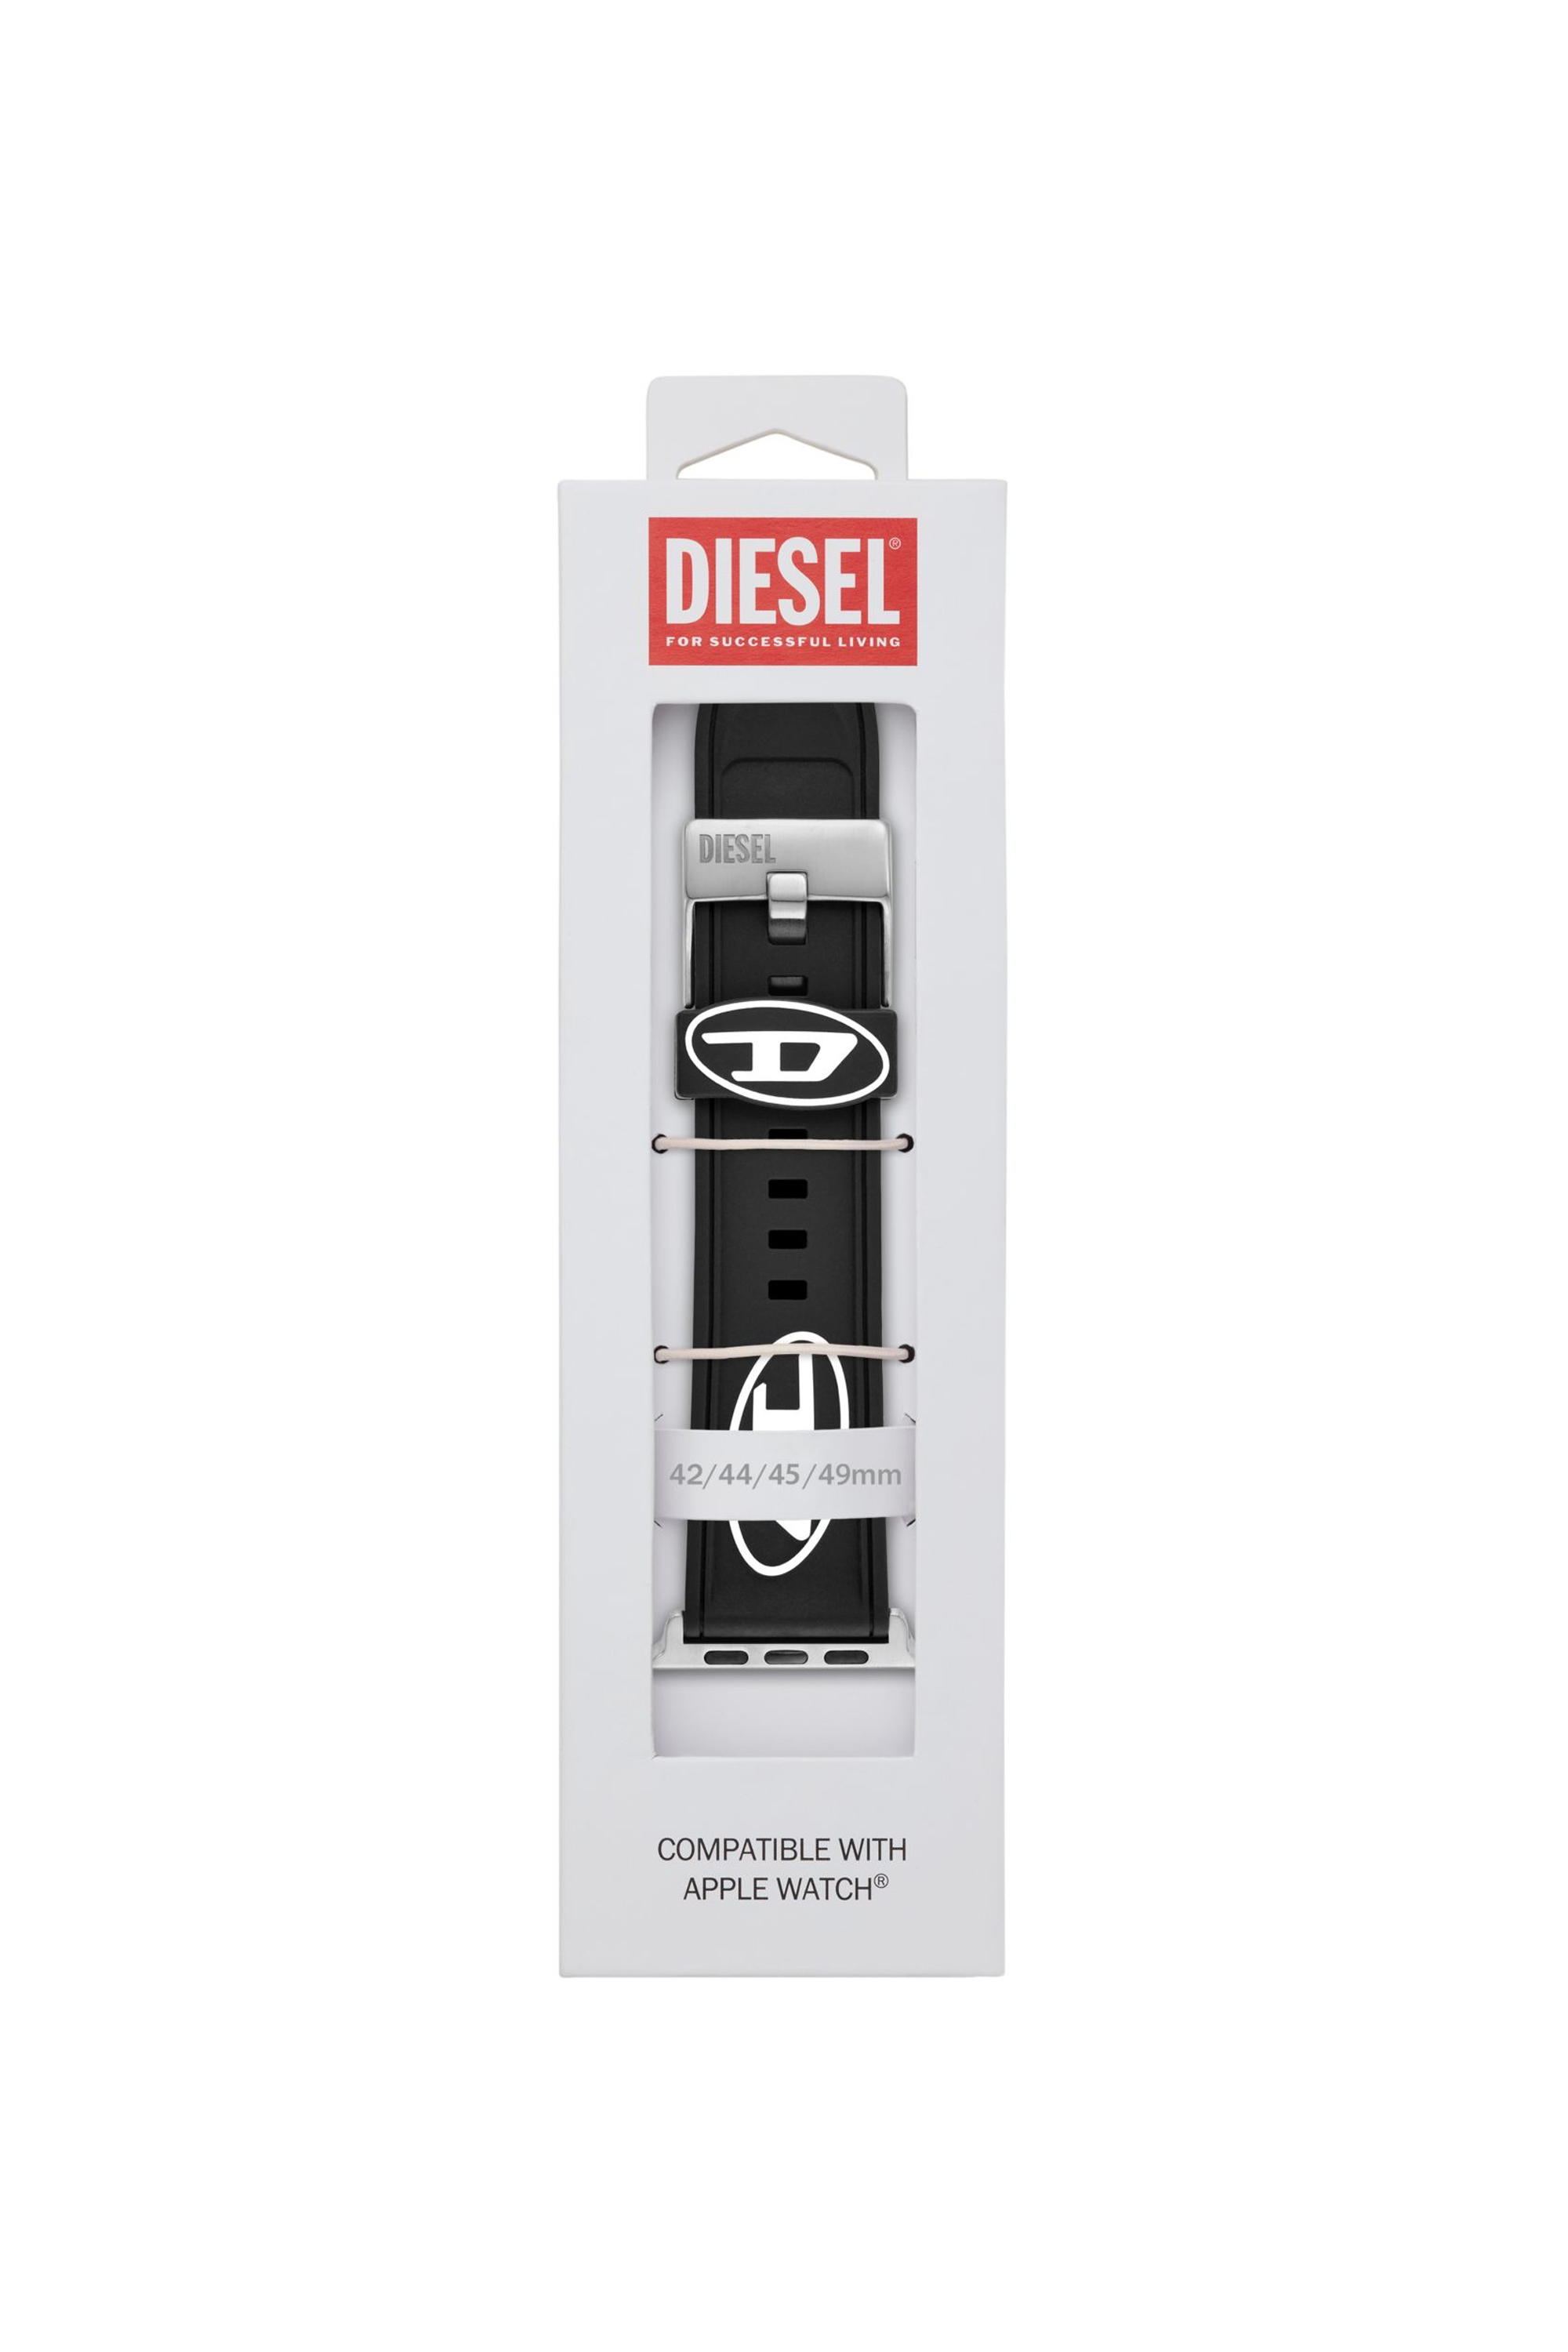 Diesel - DSS0018, Nero - Image 3